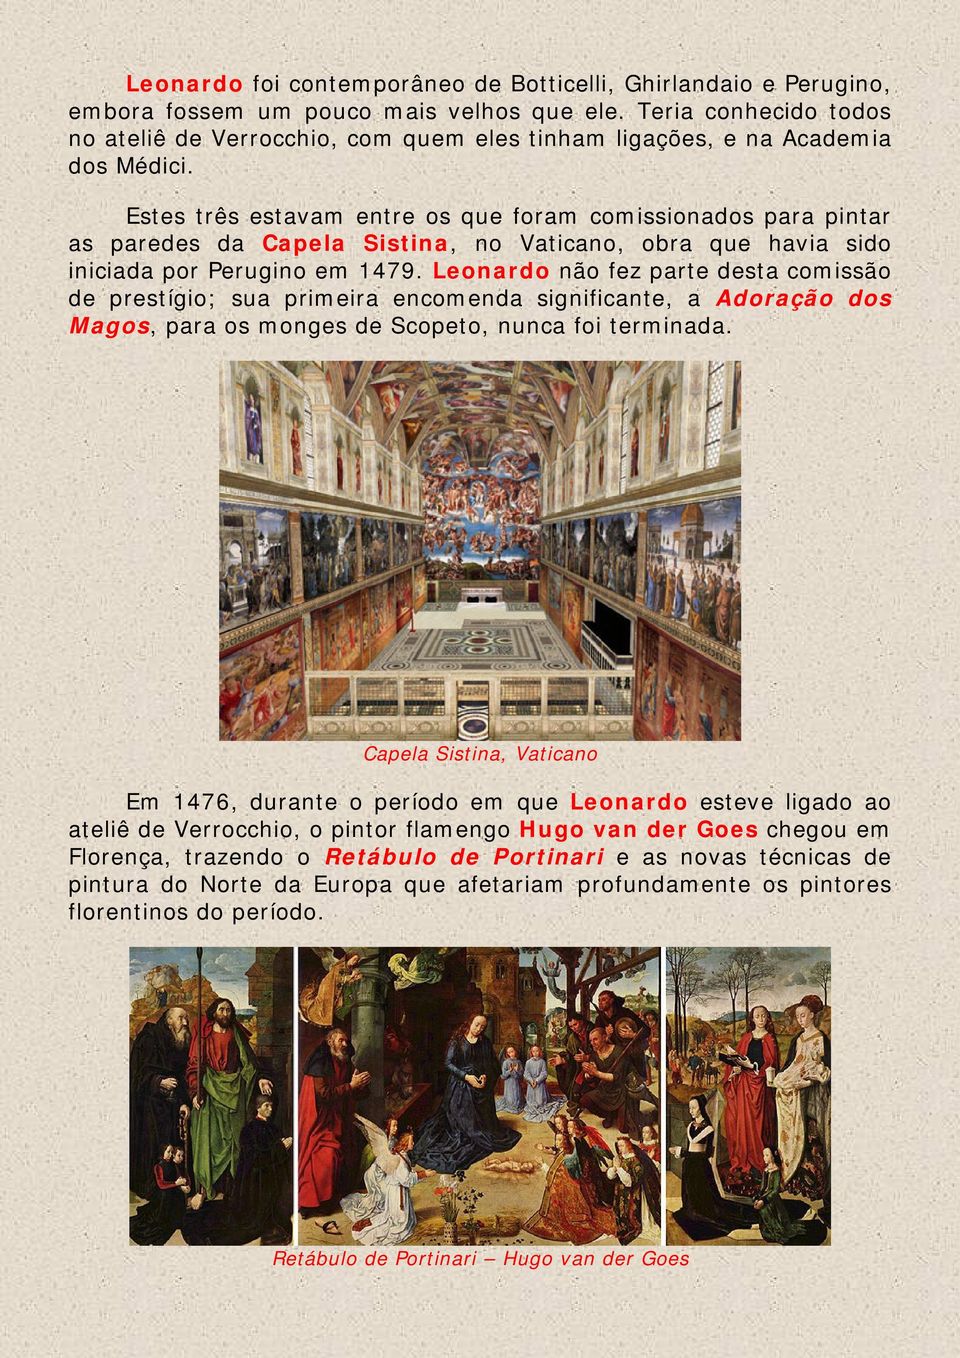 Estes três estavam entre os que foram comissionados para pintar as paredes da Capela Sistina, no Vaticano, obra que havia sido iniciada por Perugino em 1479.